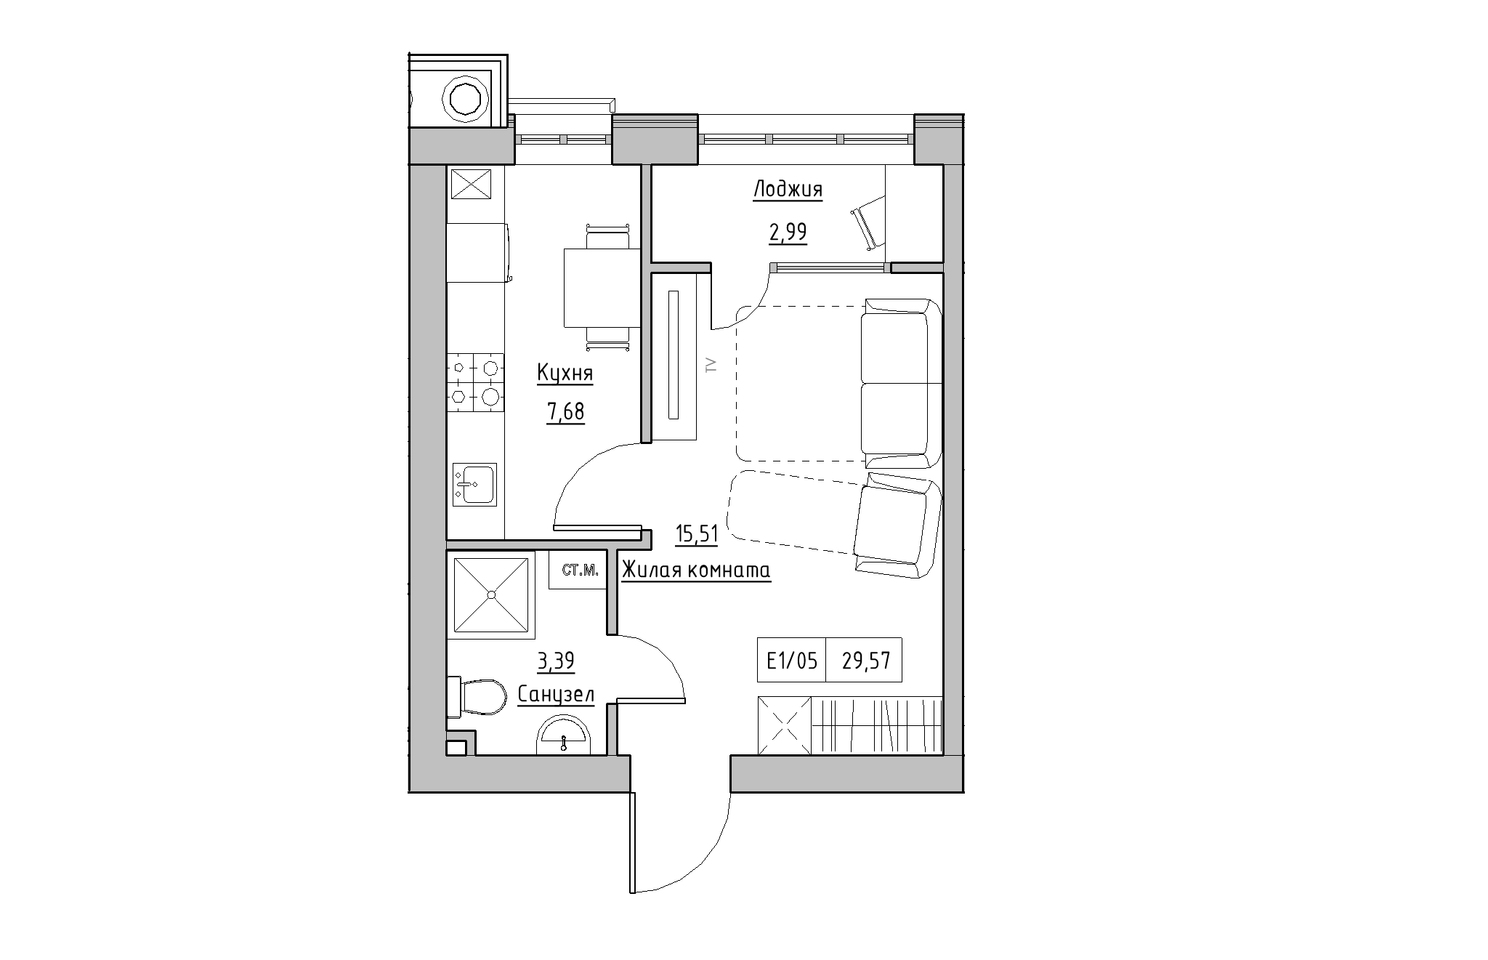 Планировка 1-к квартира площей 29.57м2, KS-010-04/0006.